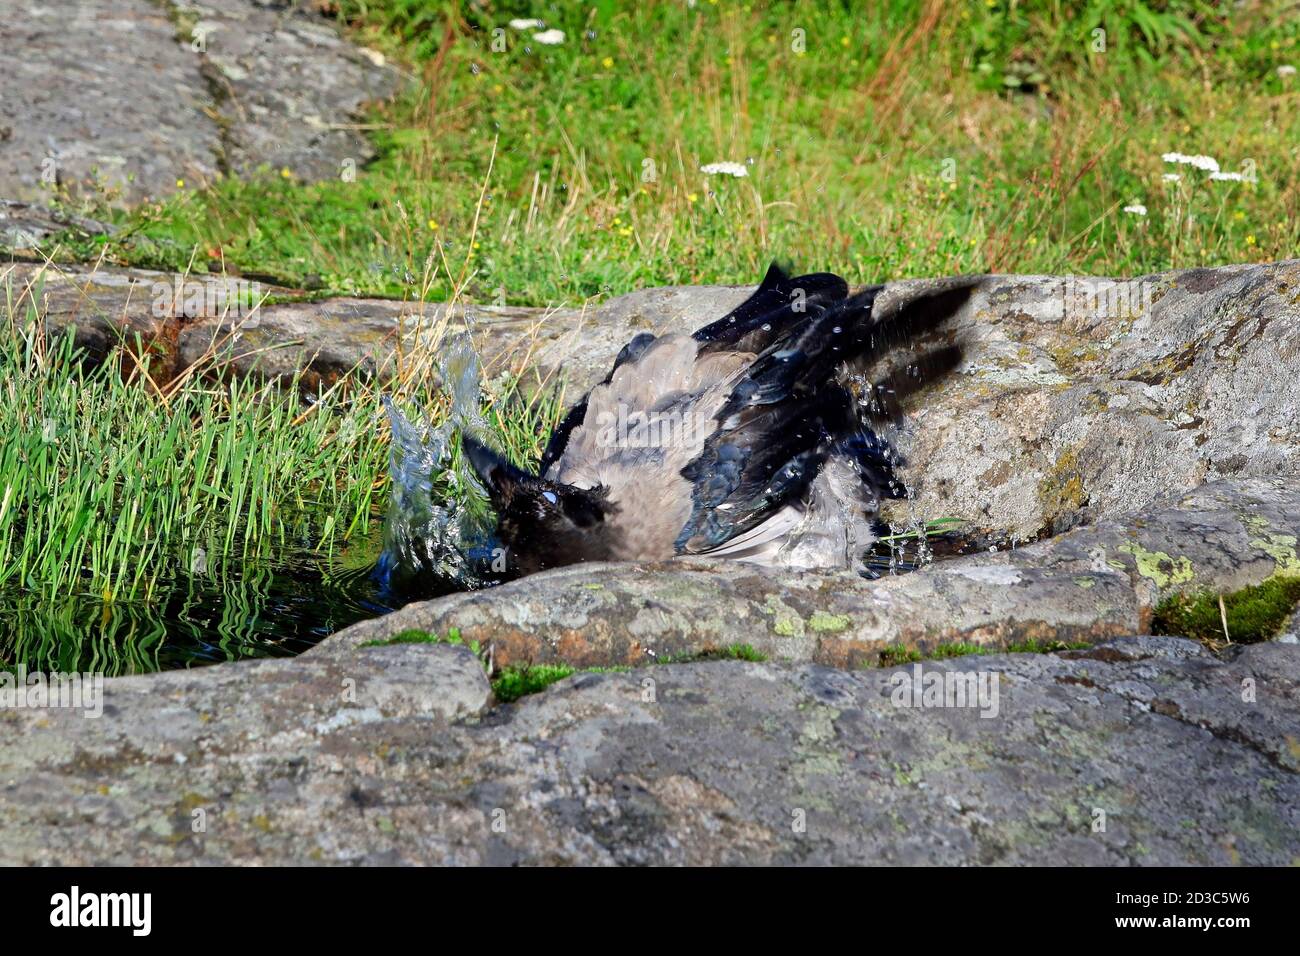 Jeune Crow à capuchon, Corvus cornix prenant un bain dans un bassin d'eau de pluie recueilli sur une roche dans un environnement naturel. Banque D'Images